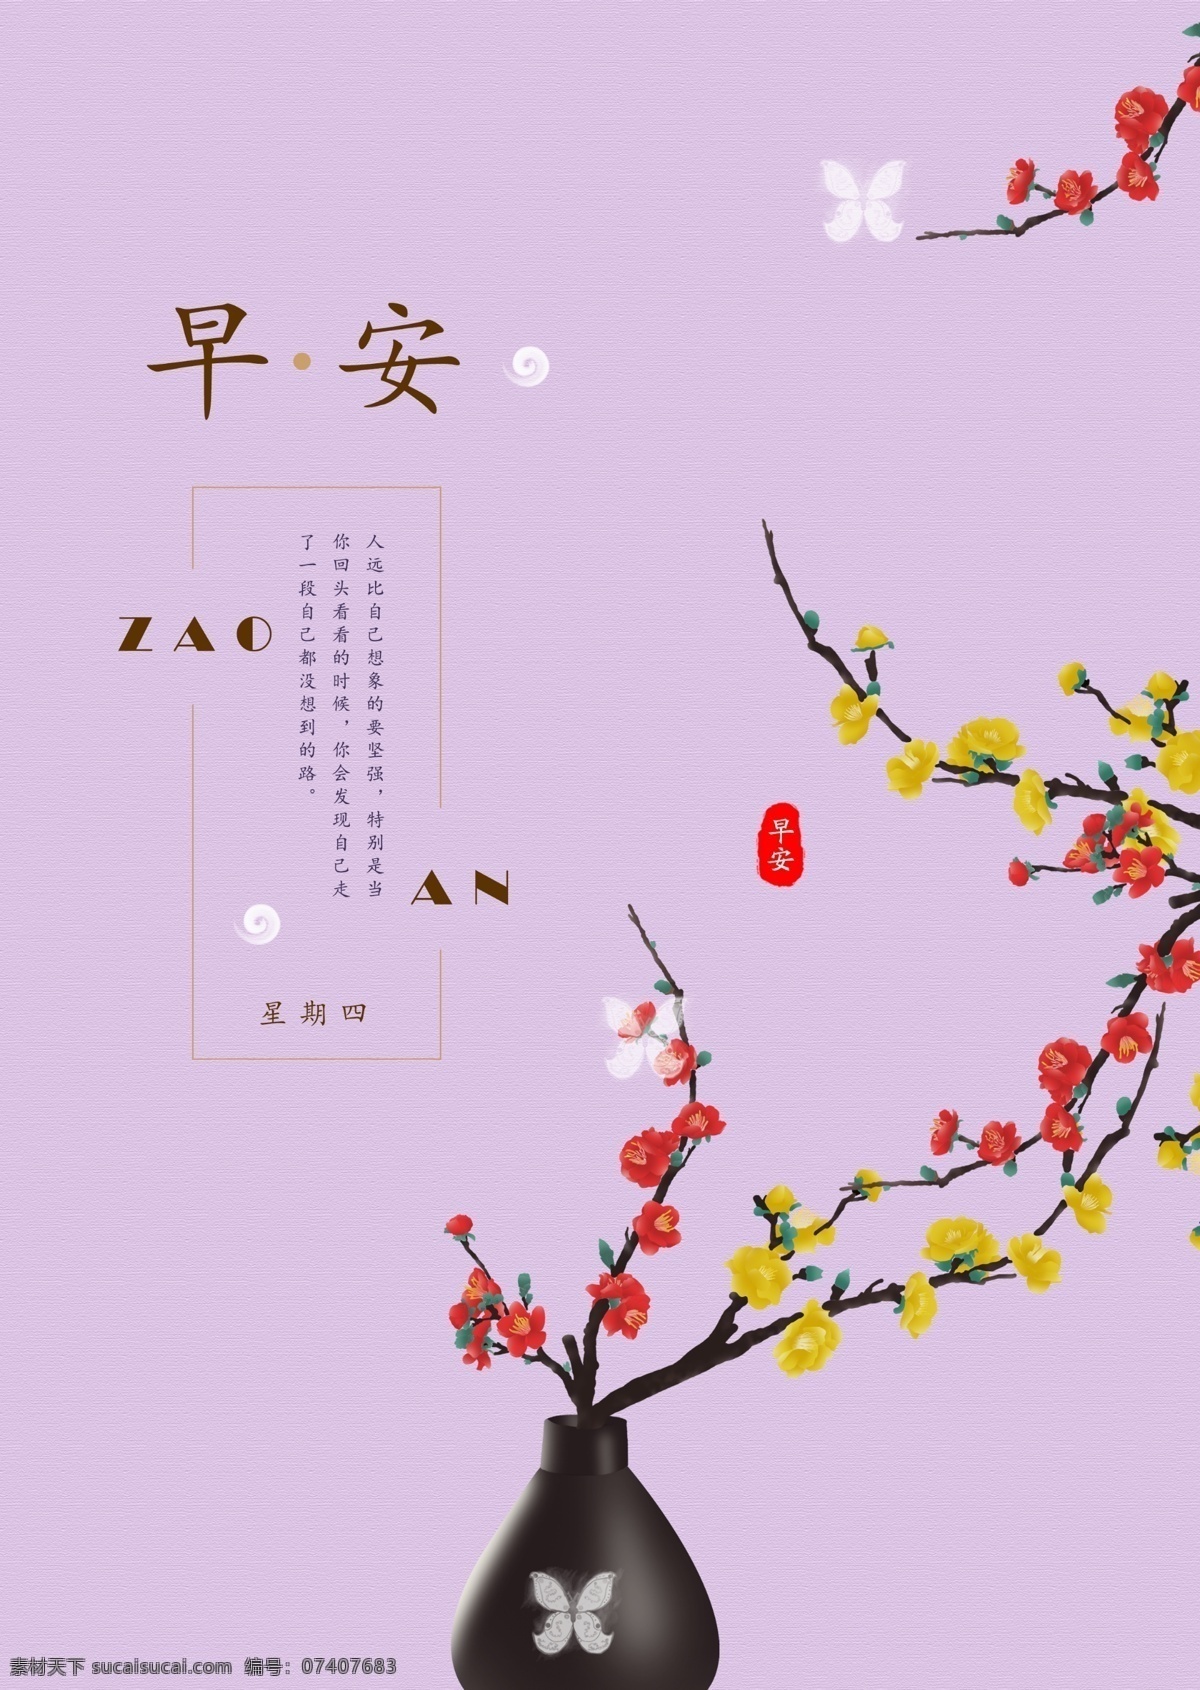 早安 节气 中国 风 海报 励志 宣传 图 中国风 励志海报 宣传图 花朵 梅花